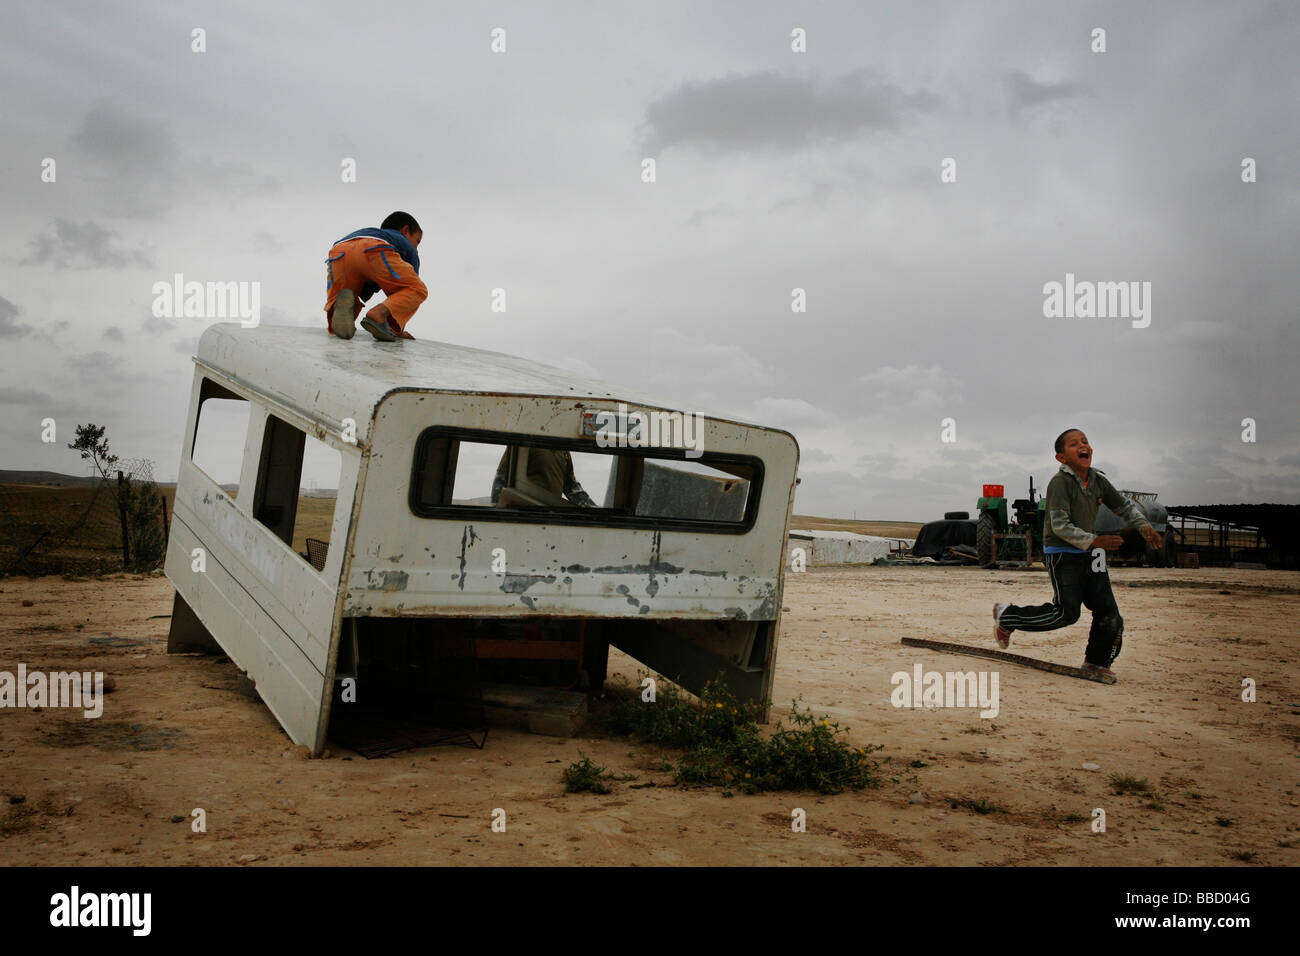 Kinder spielen mit dem Skelett eines Autos in das Dorf El Araqeeb, Israel Stockfoto